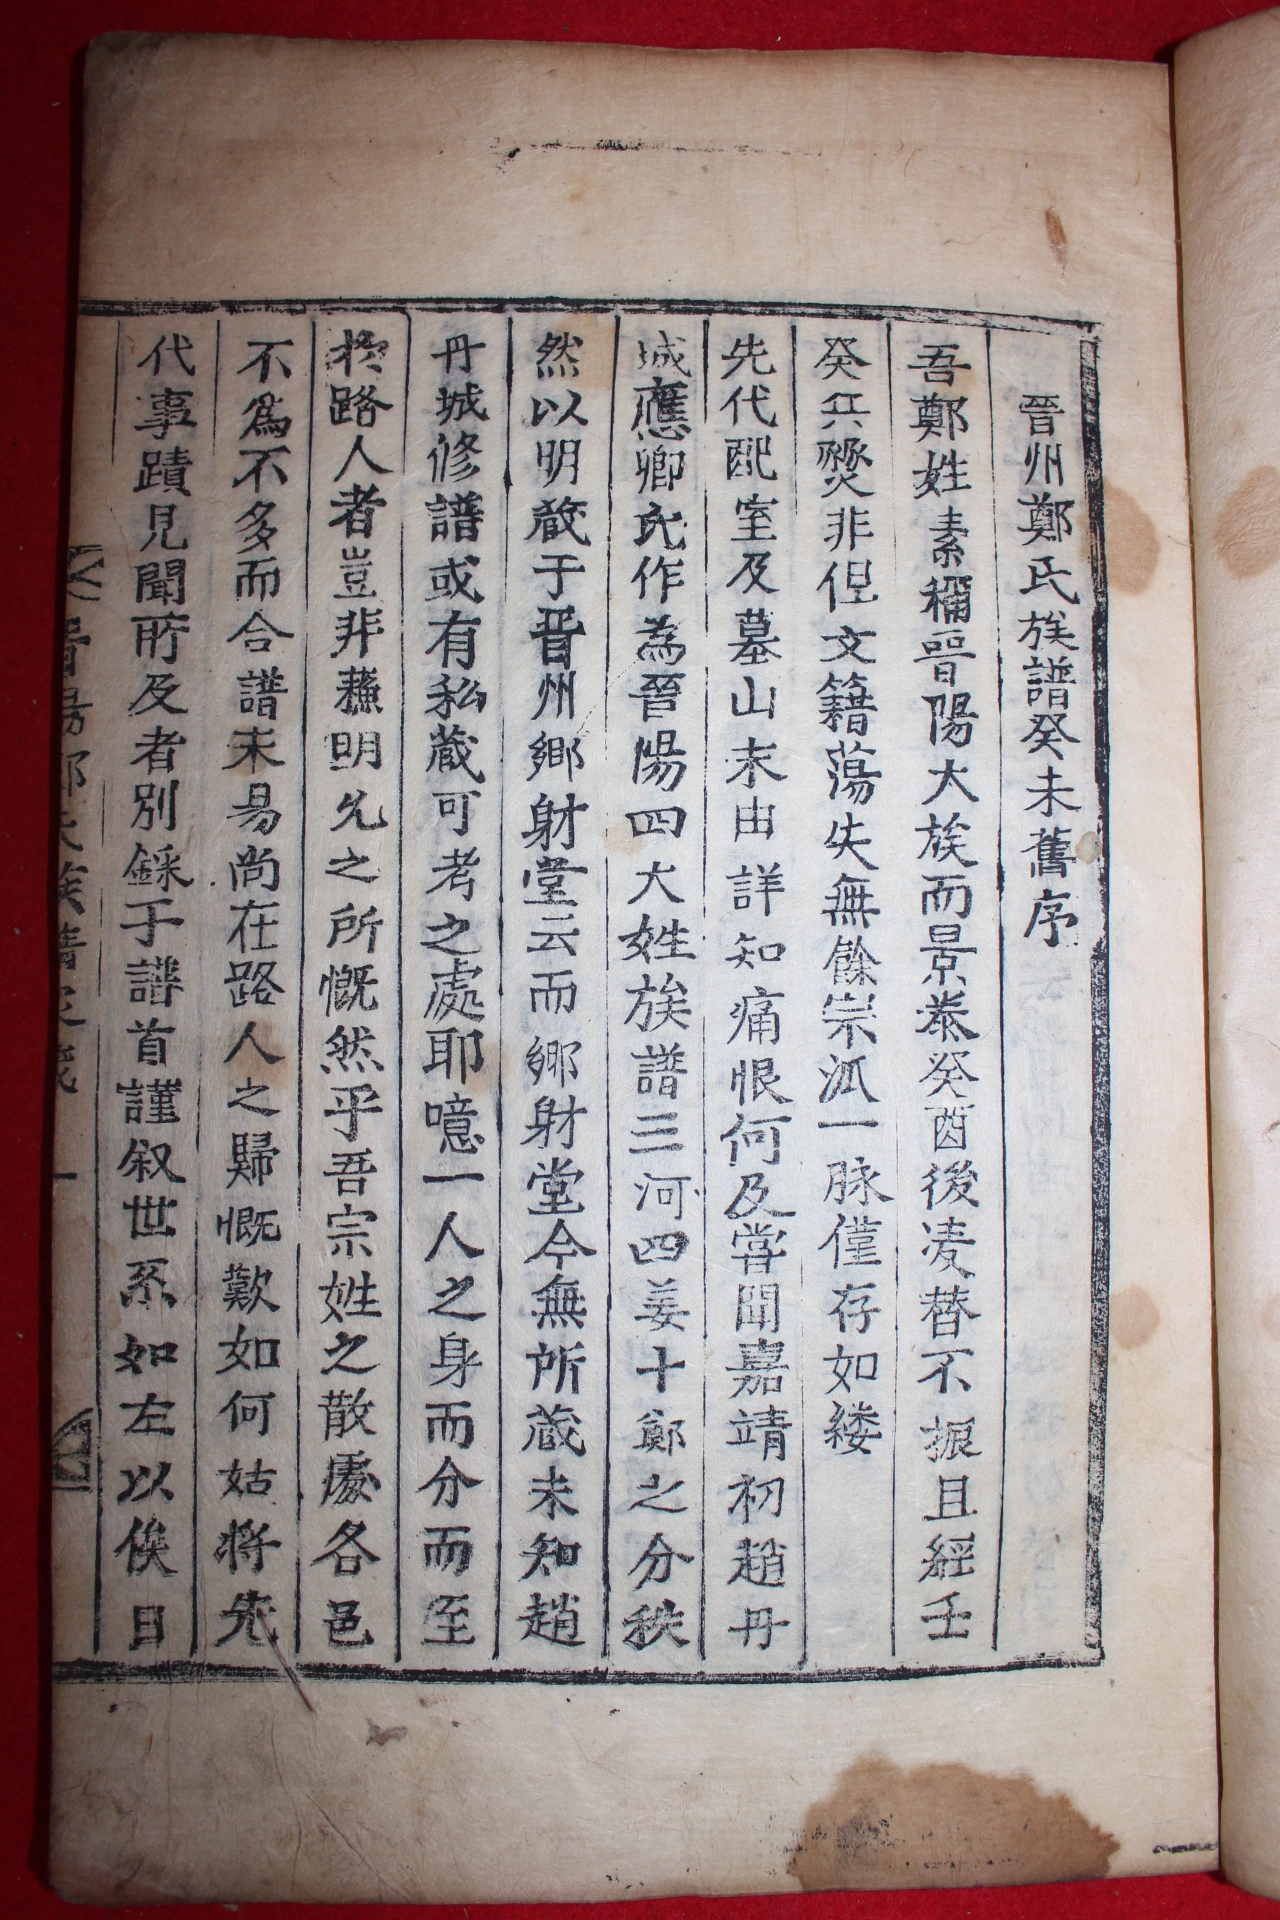 1873년(崇禎五季酉) 목활자본 진주정씨족보(晉州鄭氏族譜) 5책